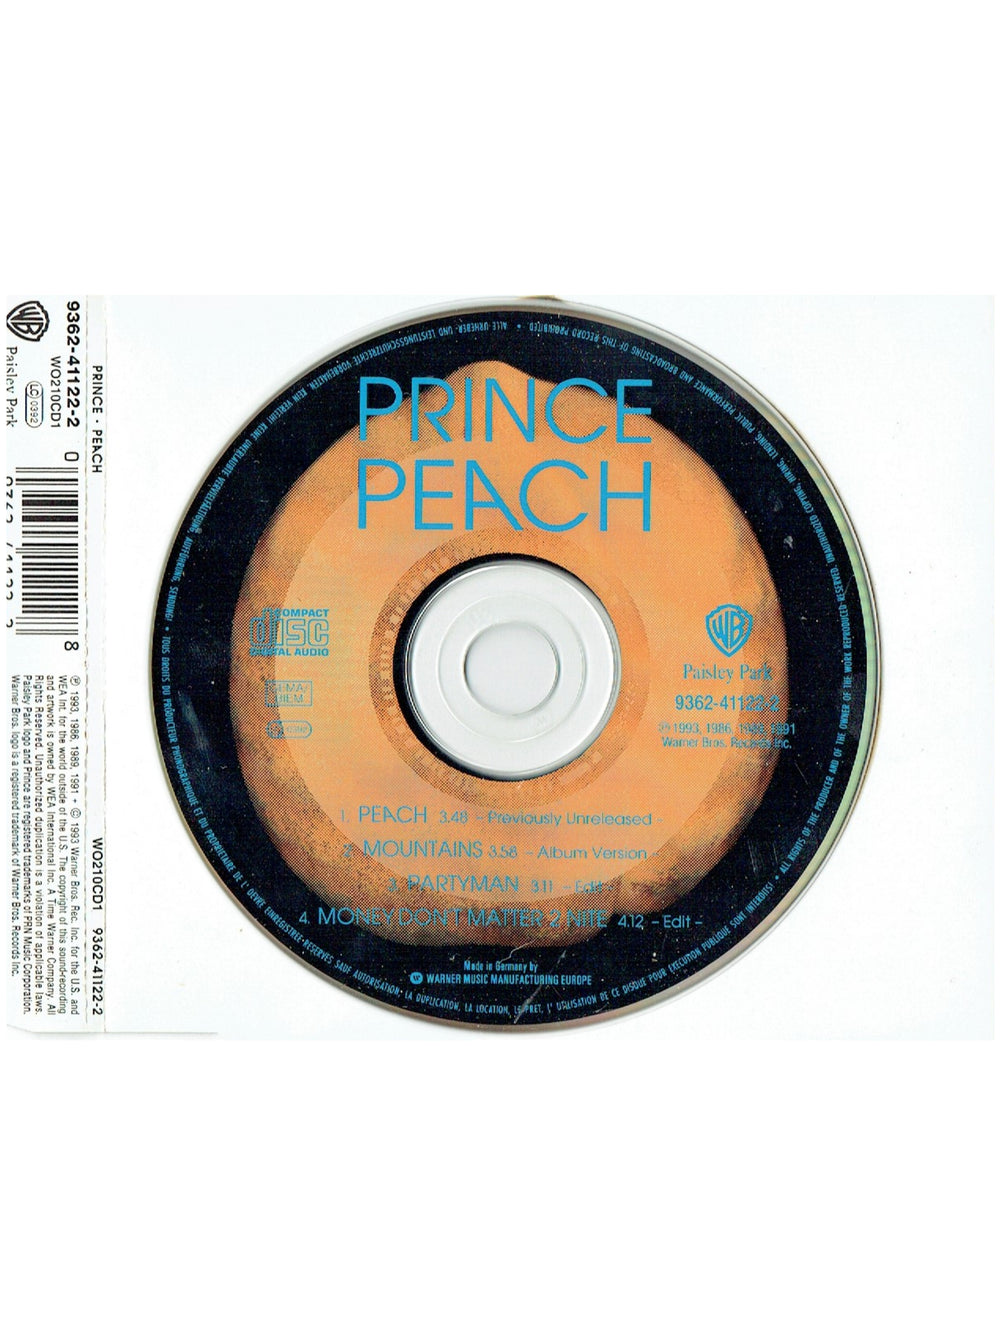 Prince Peach Part 2 Of A 2 CD Set UK CD Single 1993 Original 4 Tracks